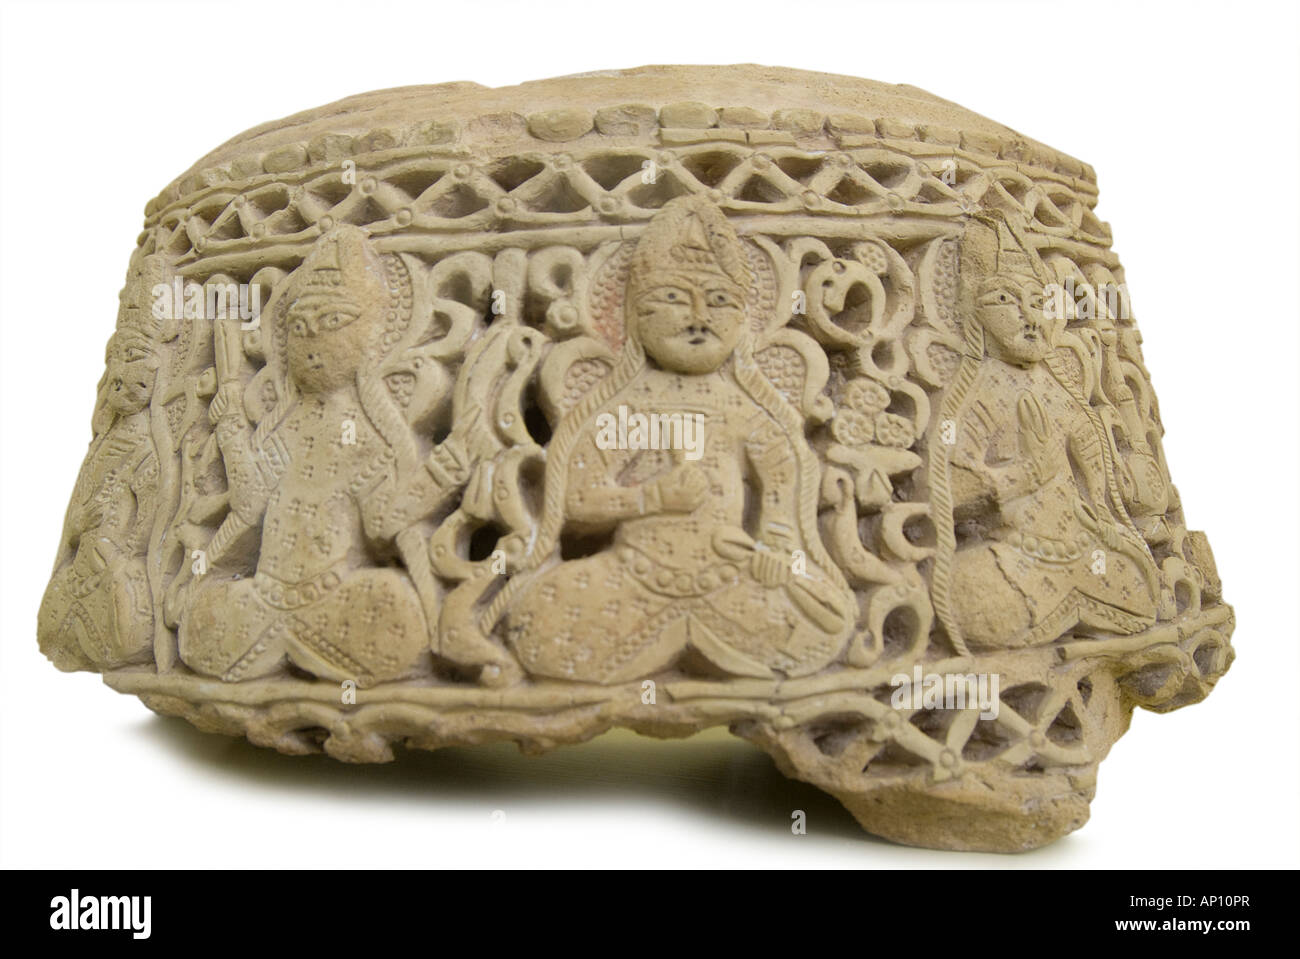 Iran Steinskulptur Persien persische kleines Fragment sitzen Zahlen antike orientalische figurative stilisierte wertvolle teure seltene h Stockfoto